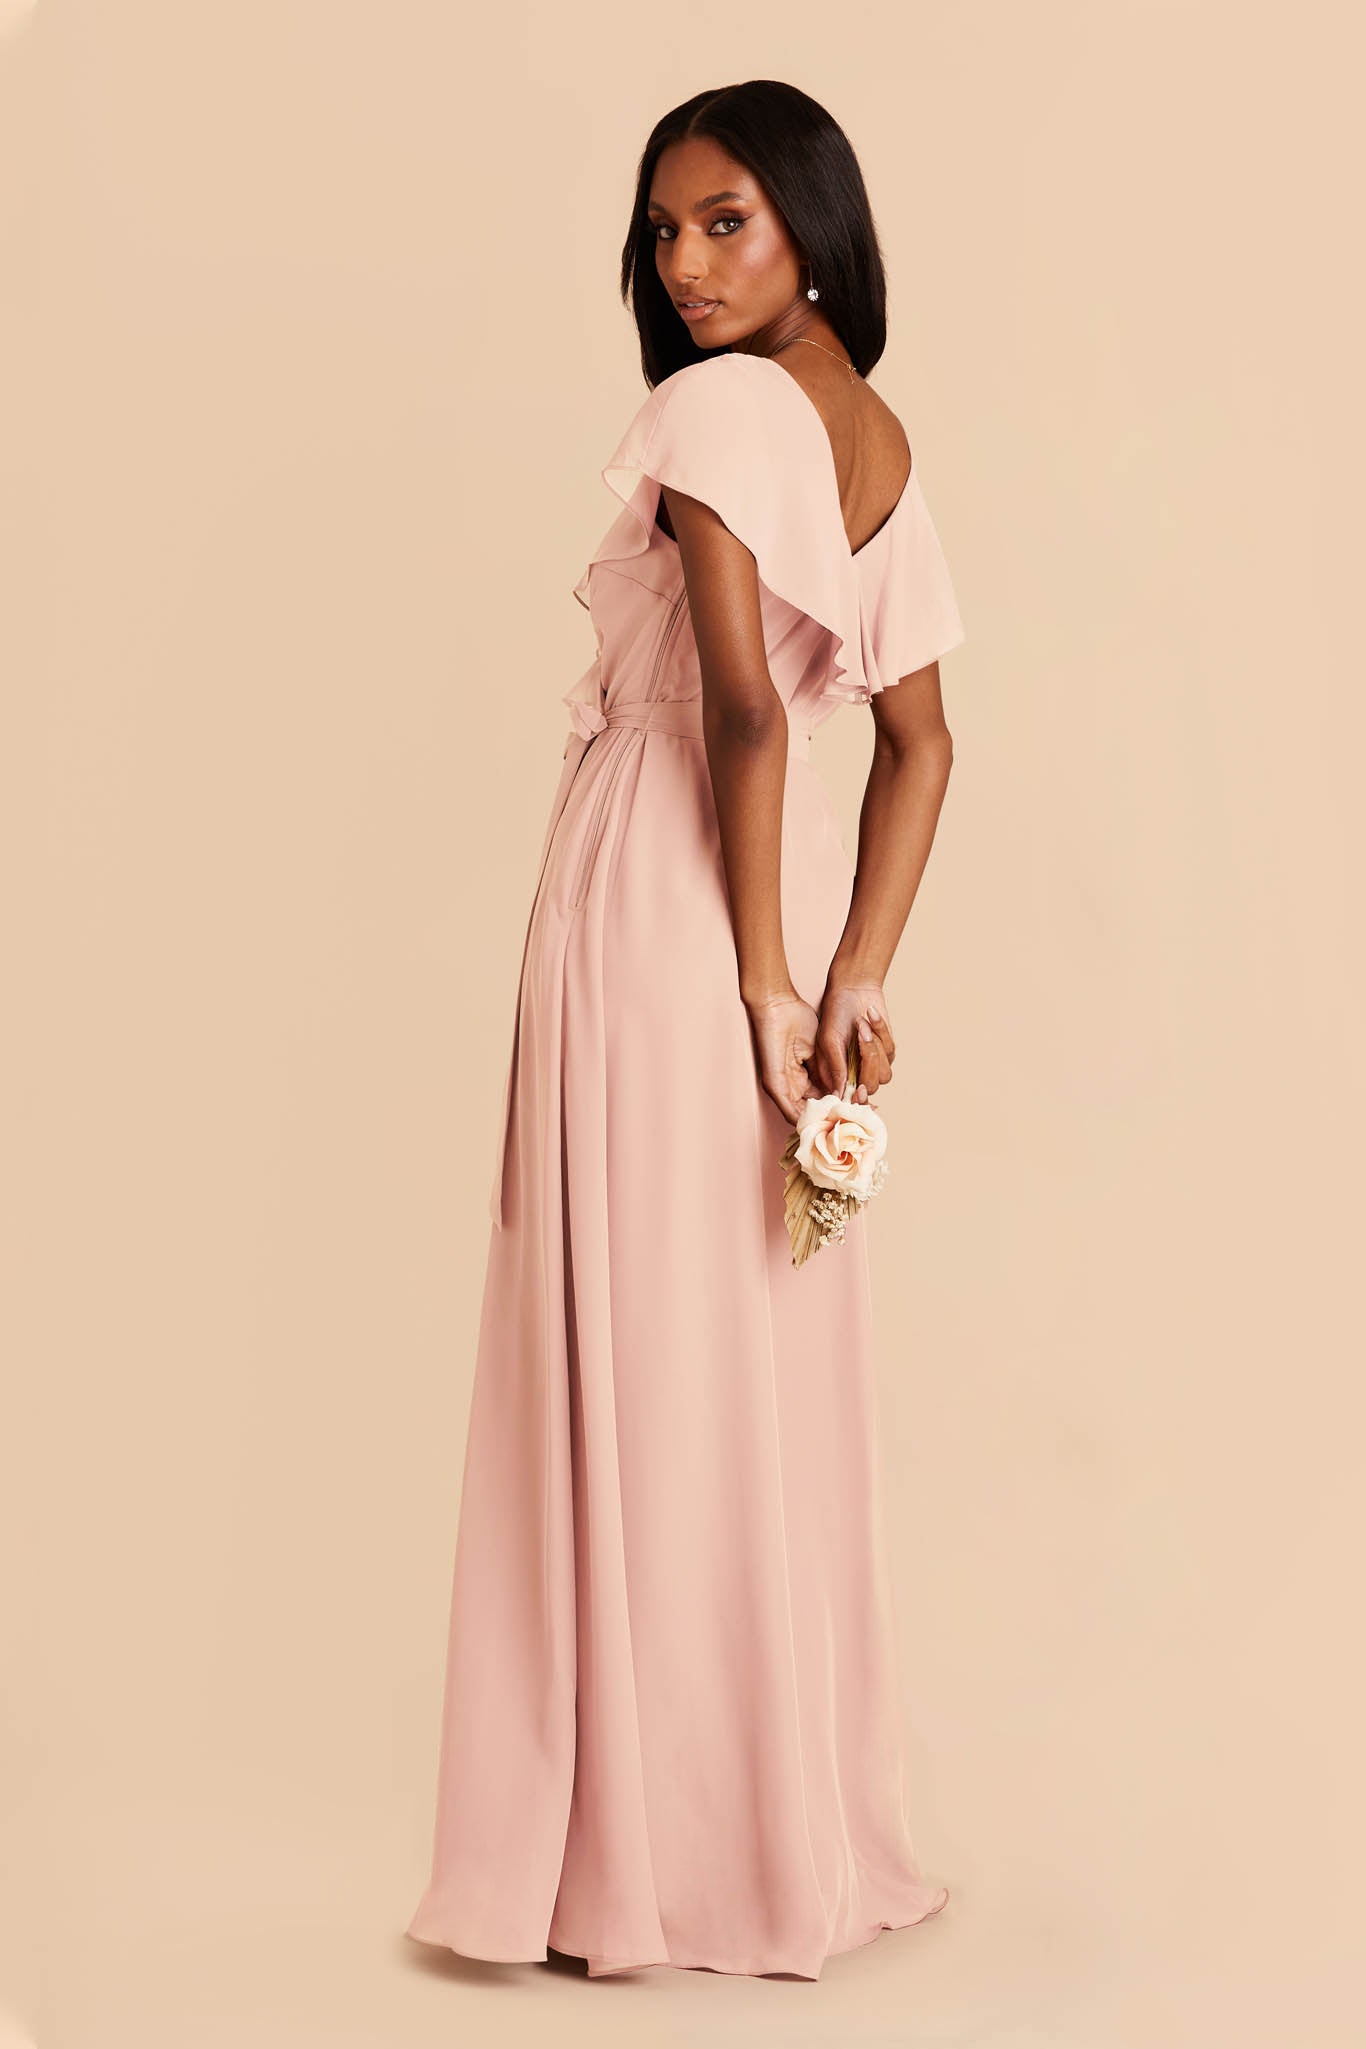 Blush Pink Jackson Chiffon Dress by Birdy Grey